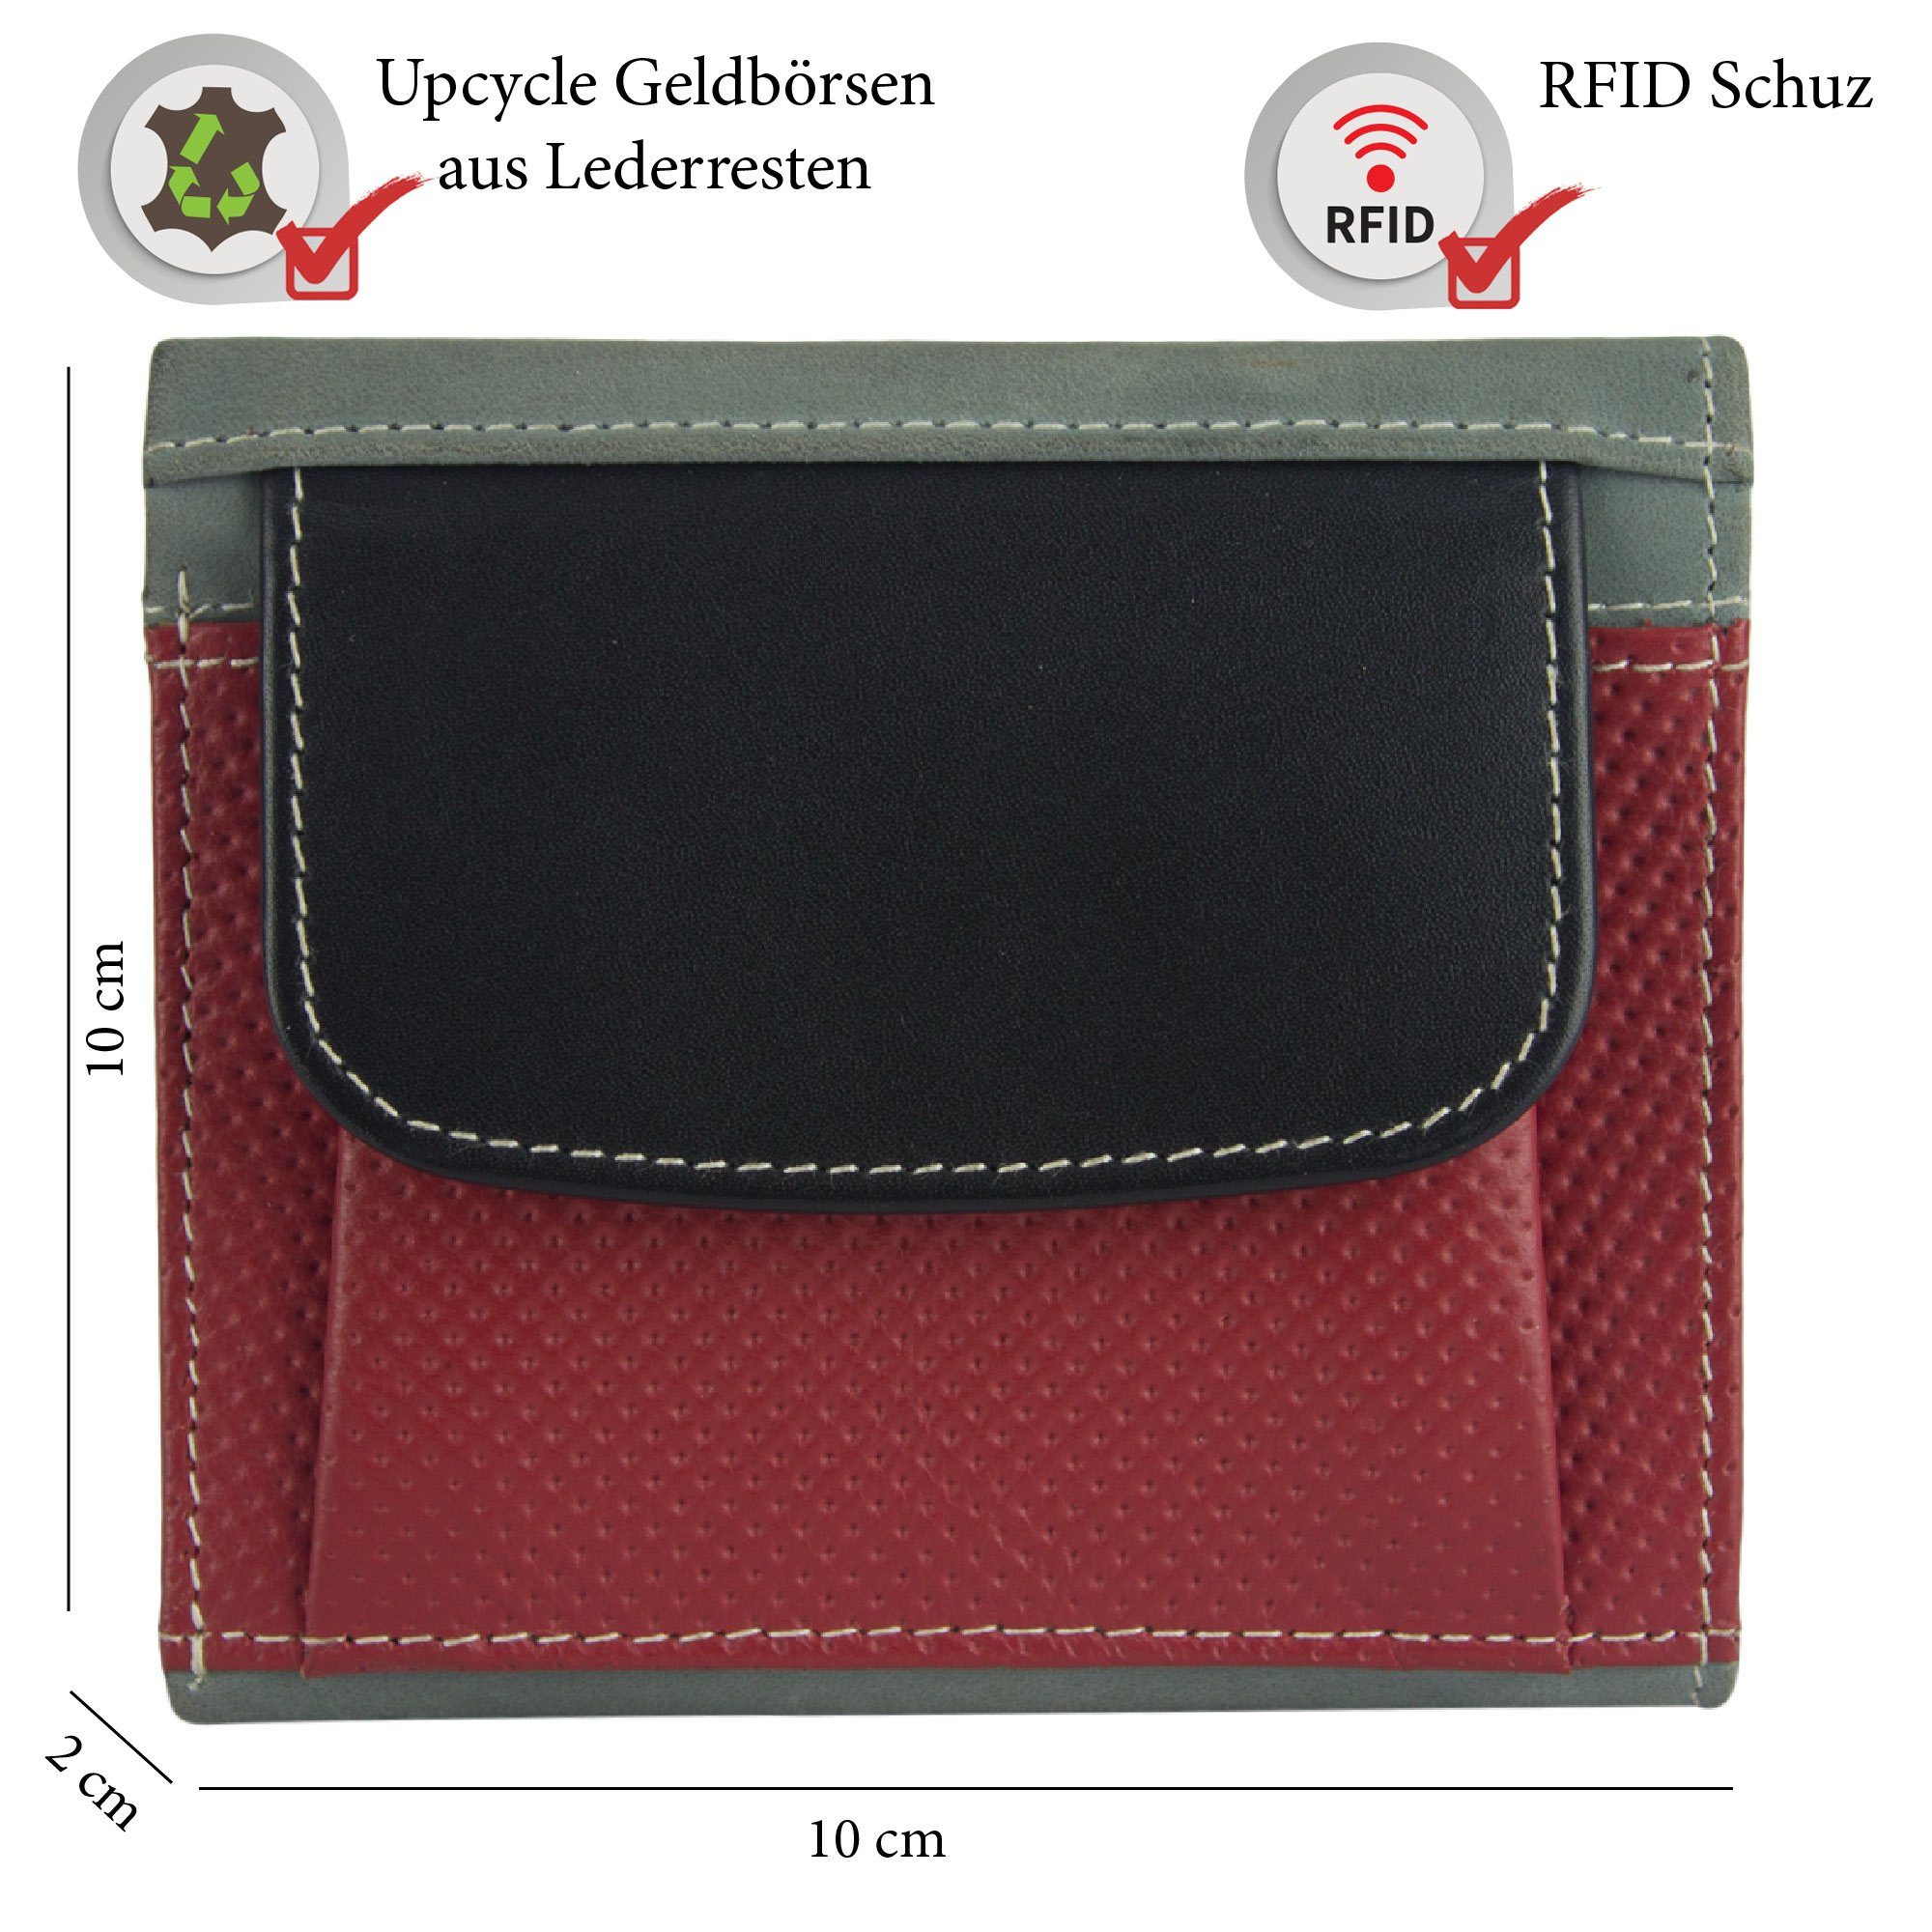 Sunsa Geldbörse echt Leder Geldbeutel Brieftasche klein Lederresten, grau/schwarz/rot Unisex aus recycelten echt RFID-Schutz, mit Damen, Leder, Portemonnaie